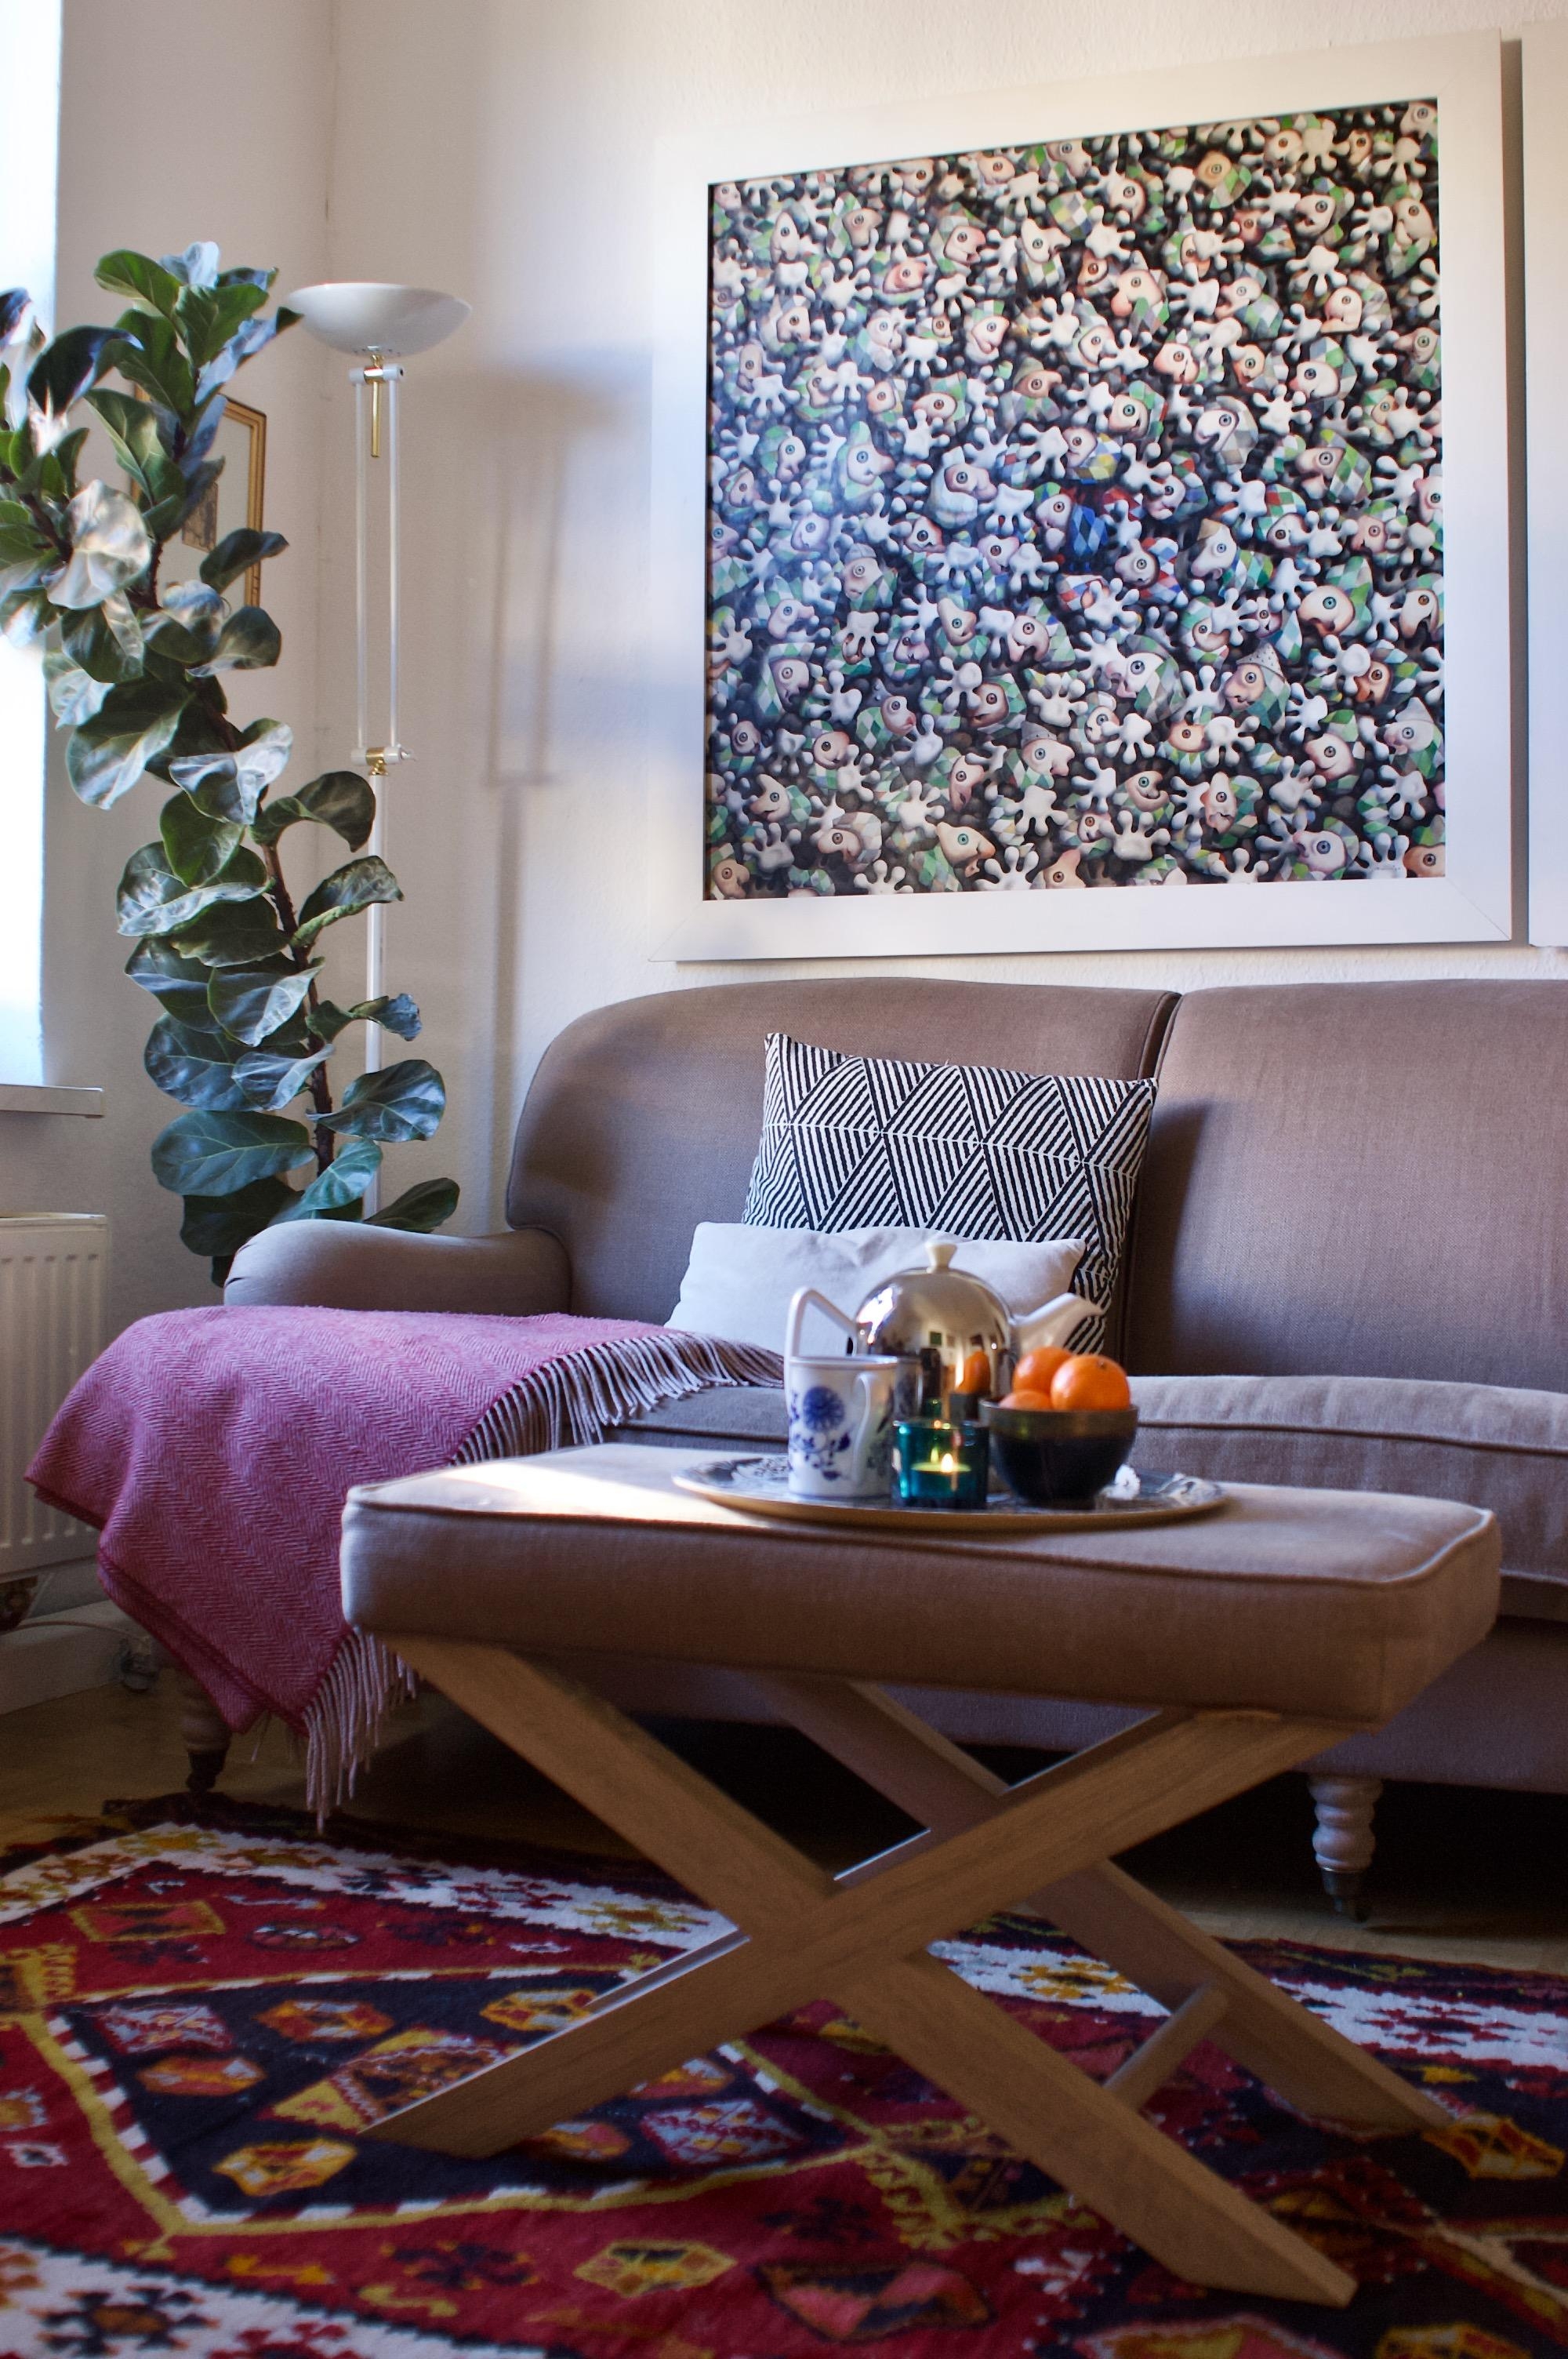 Einen frohen Wochenstart 🚀😘
#livingroom #sofa #livingwithart
#pflanzenliebe